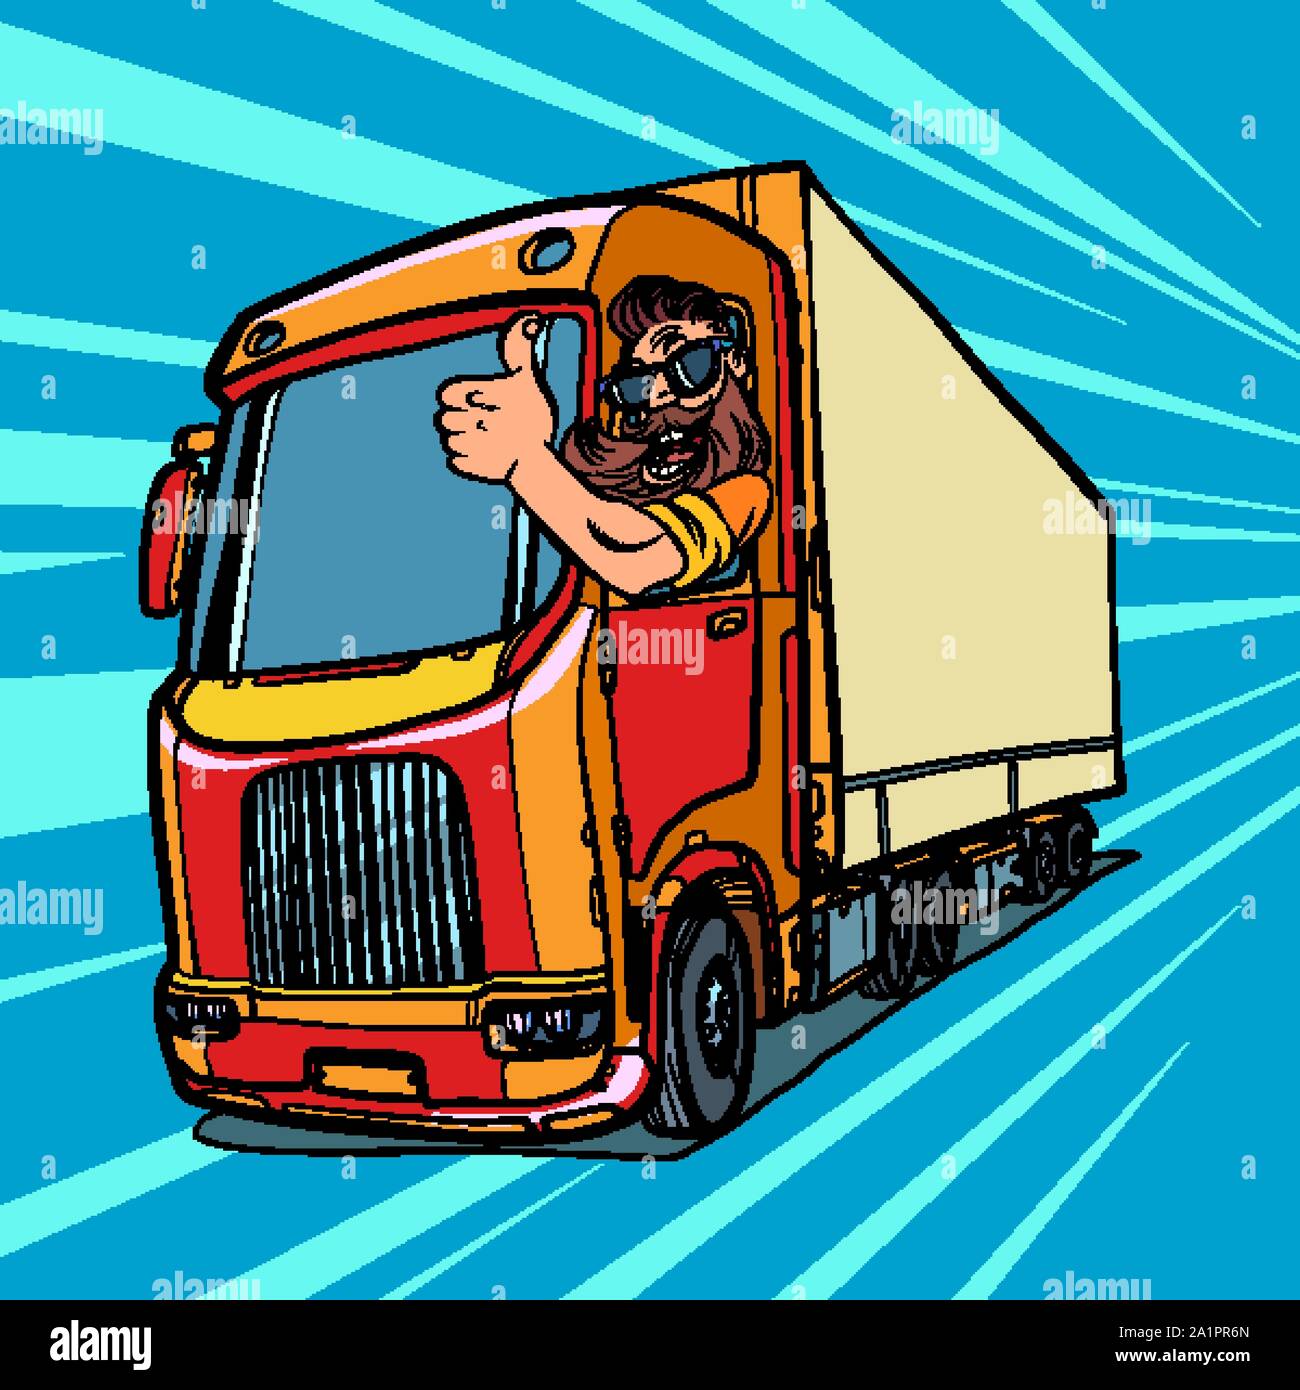 Lkw-Fahrer. Mann mit Bart Daumen nach oben. Comic cartoon Pop Art retro Vektor illustration Zeichnung Stock Vektor